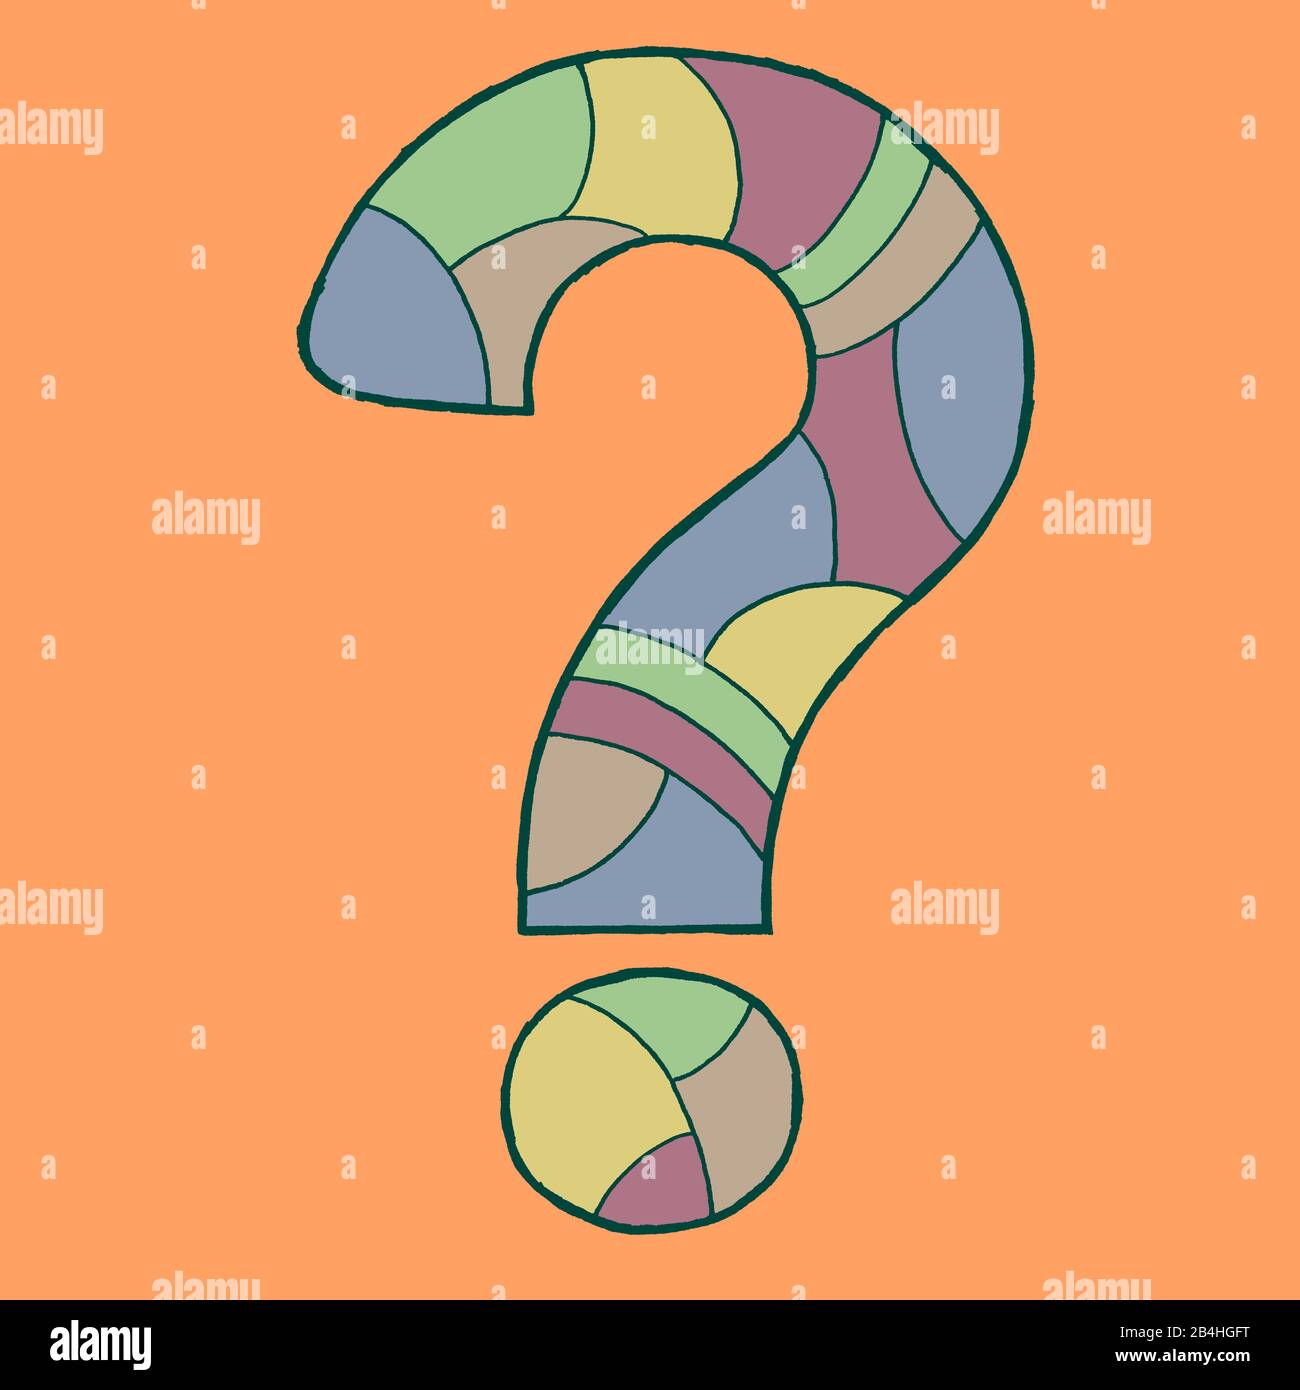 Fragezeichen, gezeichnet als Vektorillustration, in Pastell-Farbtönen in Pop-Art-Stilistik Stock Photo